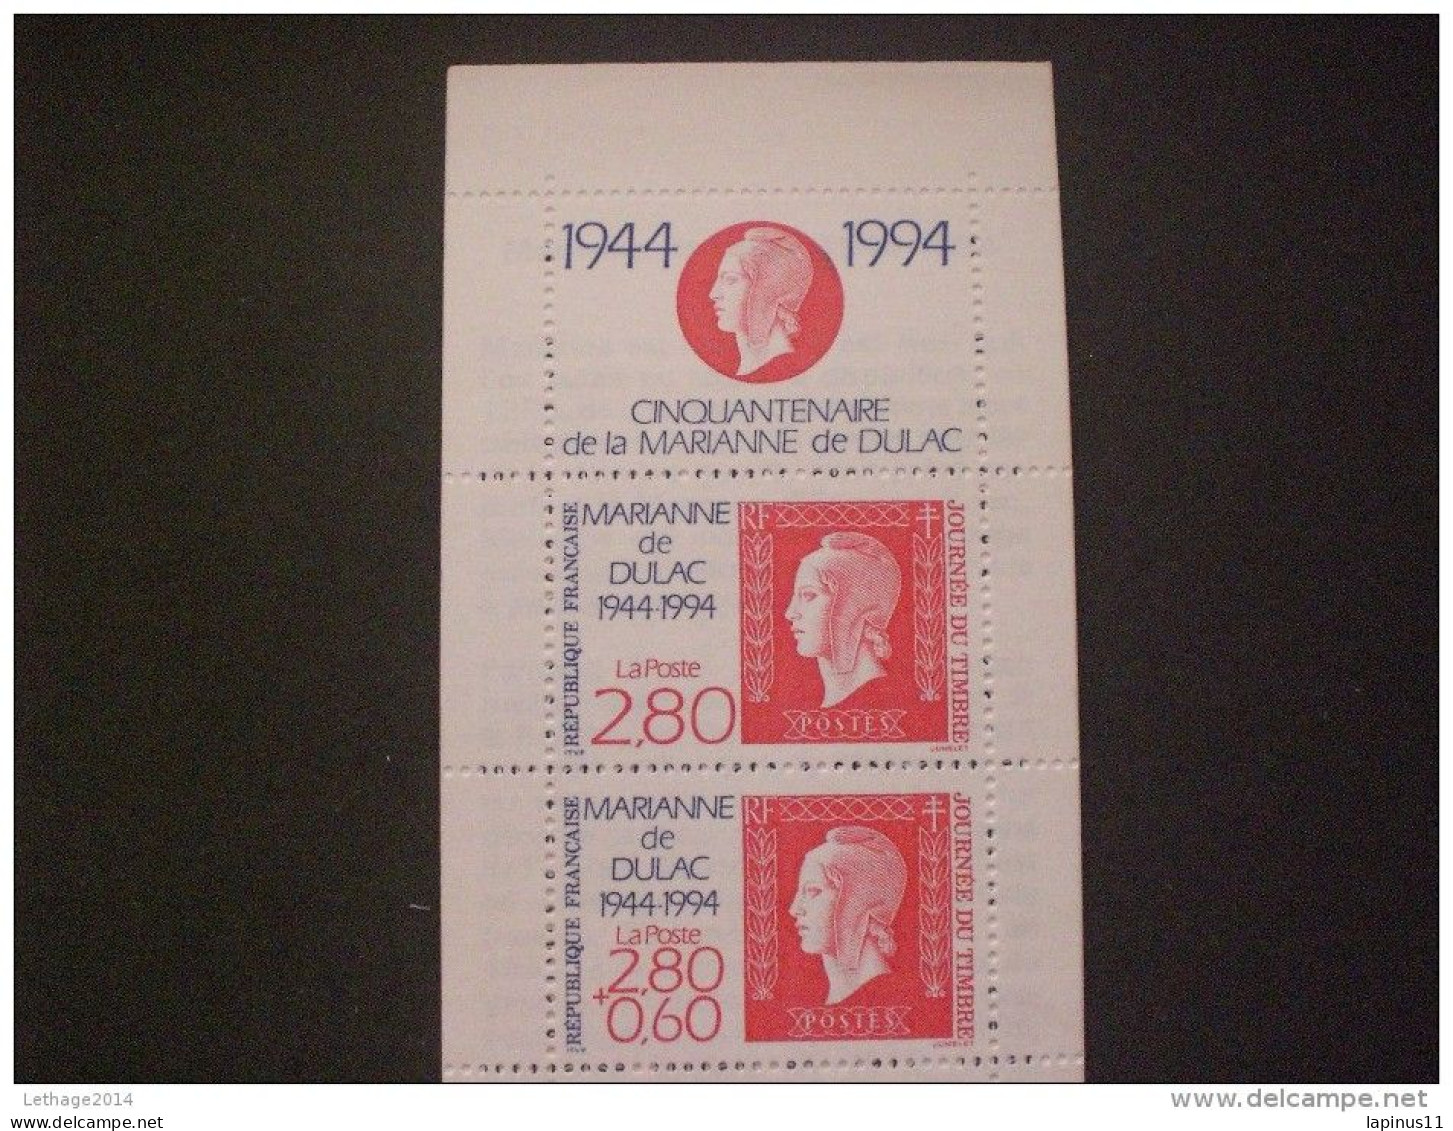 STAMPS FRANCE CARNETS 1994 Stamp Day - Dag Van De Postzegel